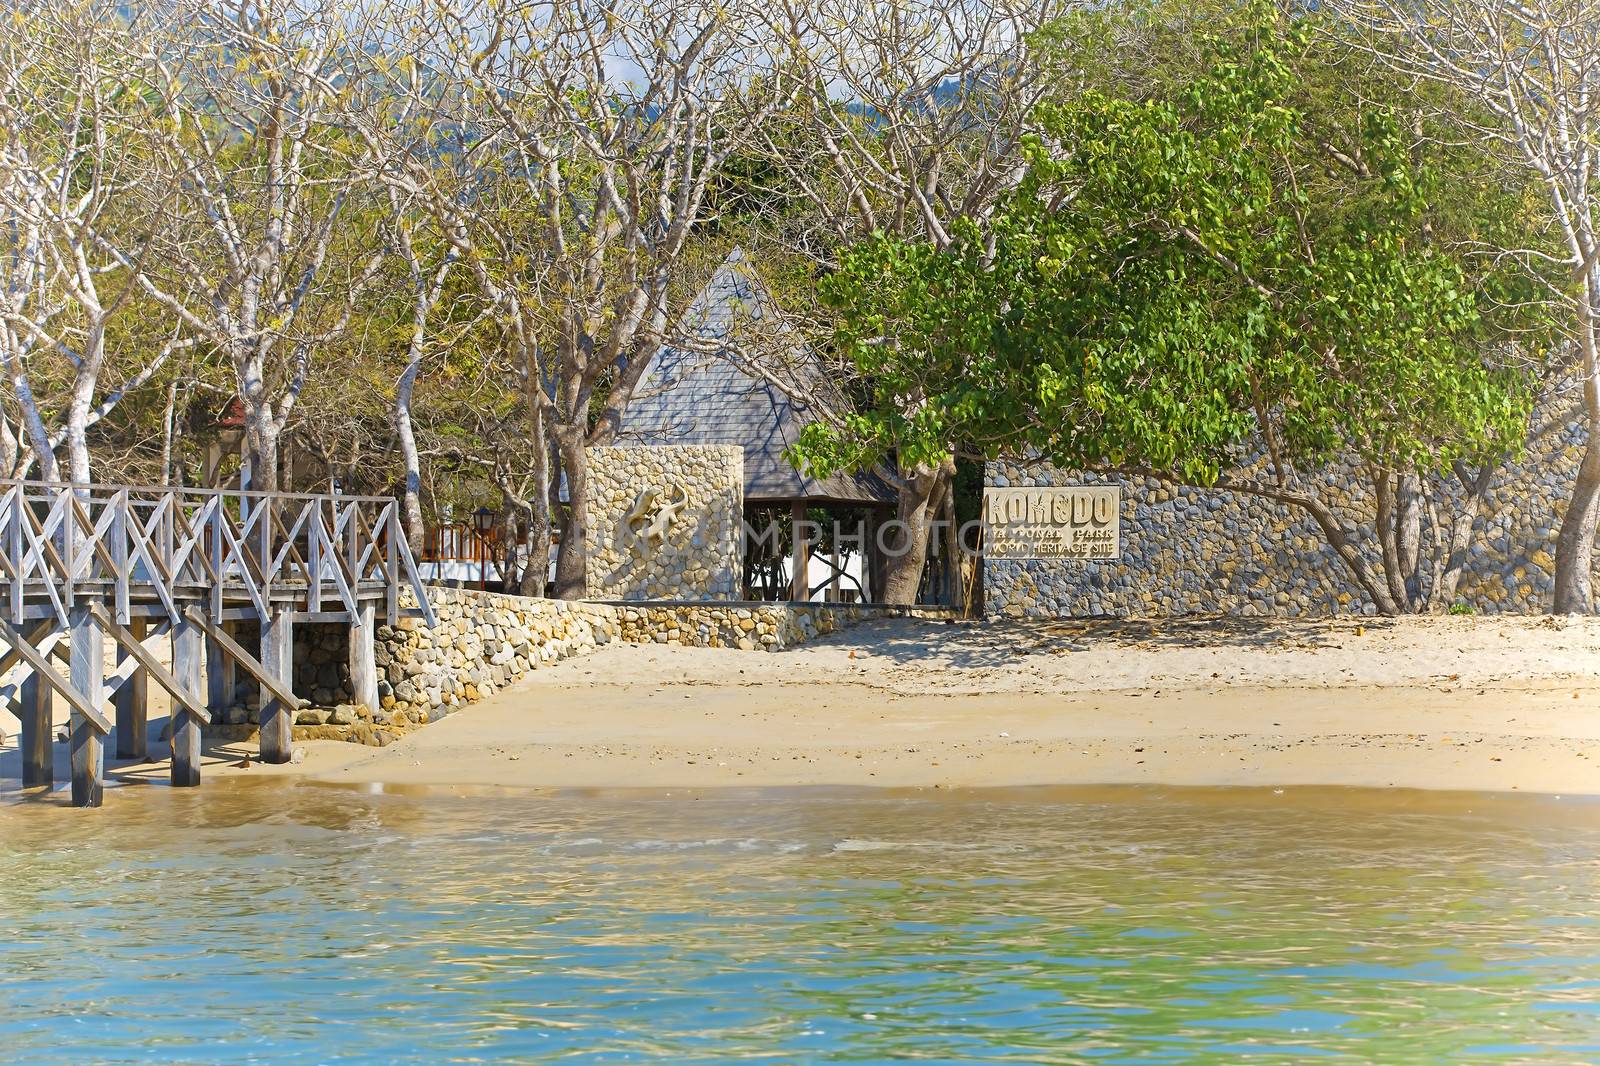 Komodo Island by kjorgen